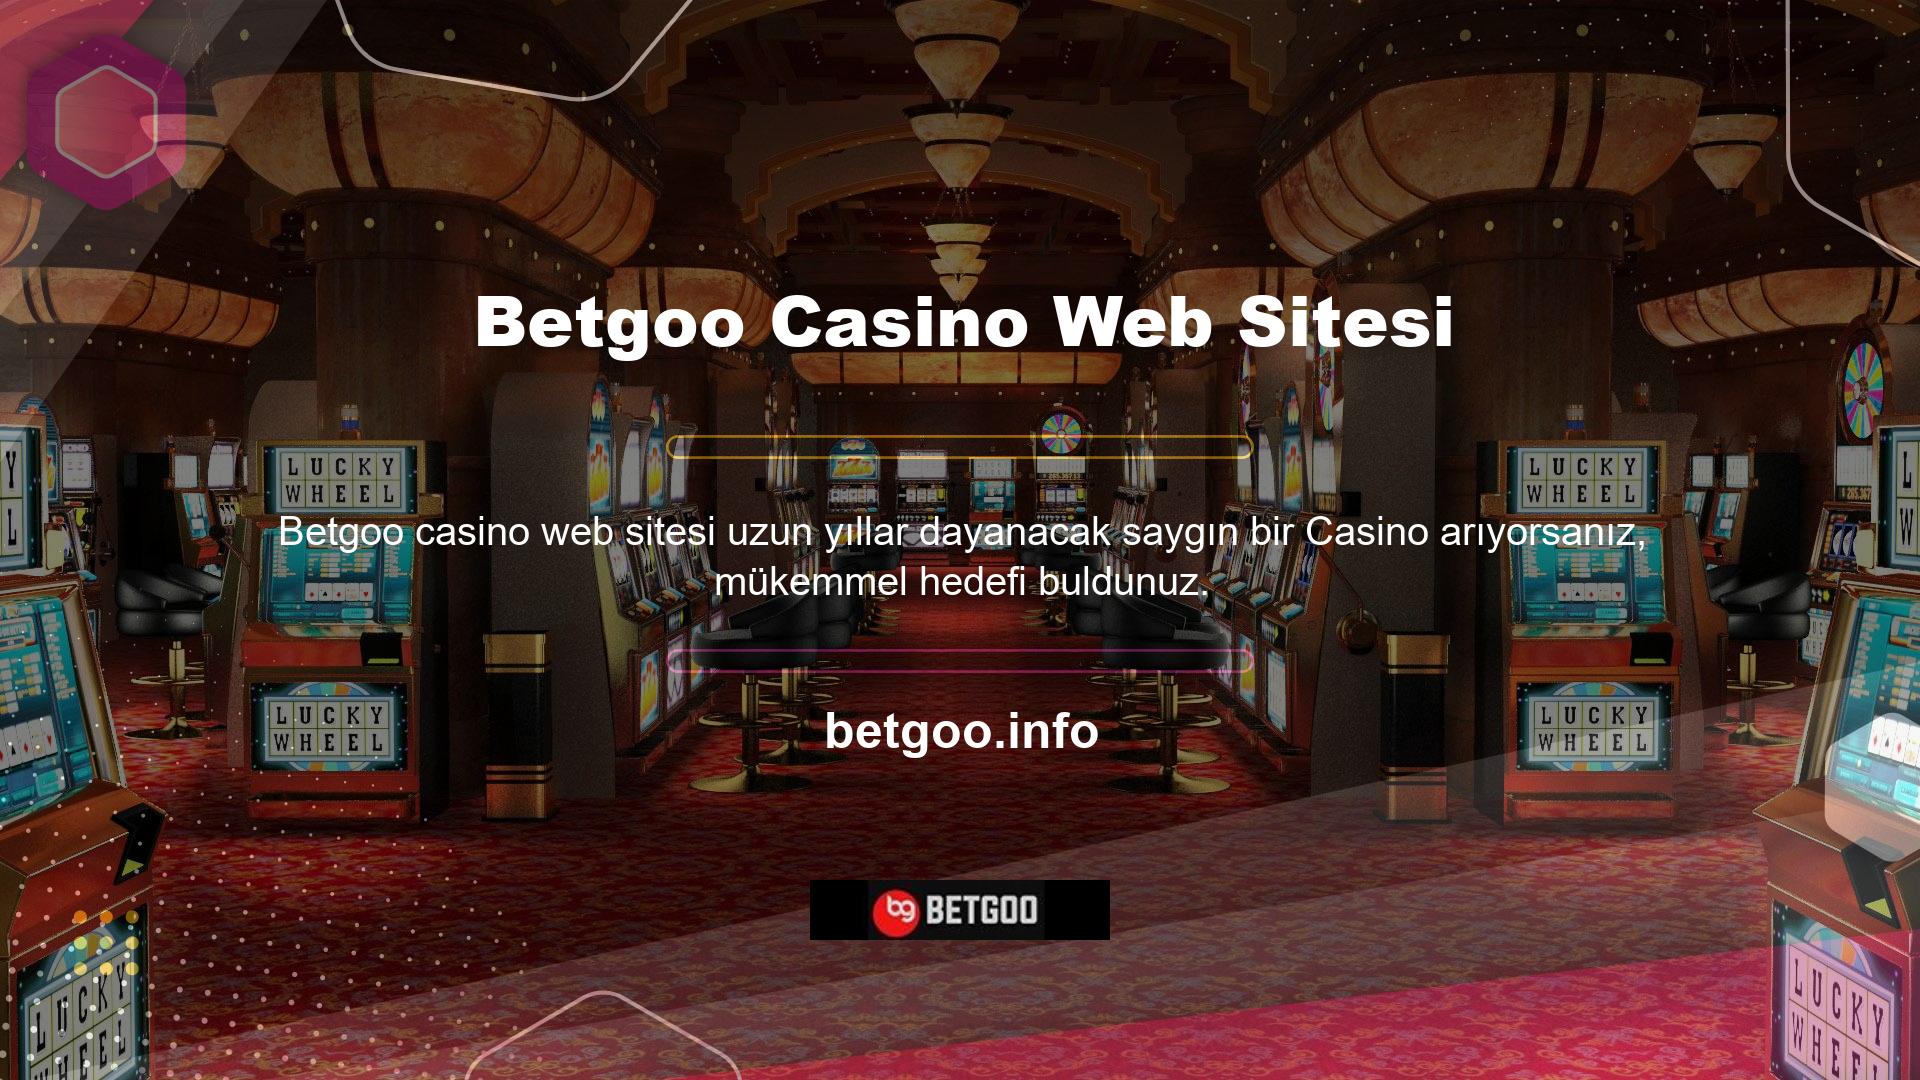 Betgoo yüksek çözünürlüklü kalite, sürekli canlı oyun masaları ve çok sayıda slot makinesinde bulunan çok çeşitli Betgoo bonus oyunlarıyla otantik bir casino deneyimi sağlar